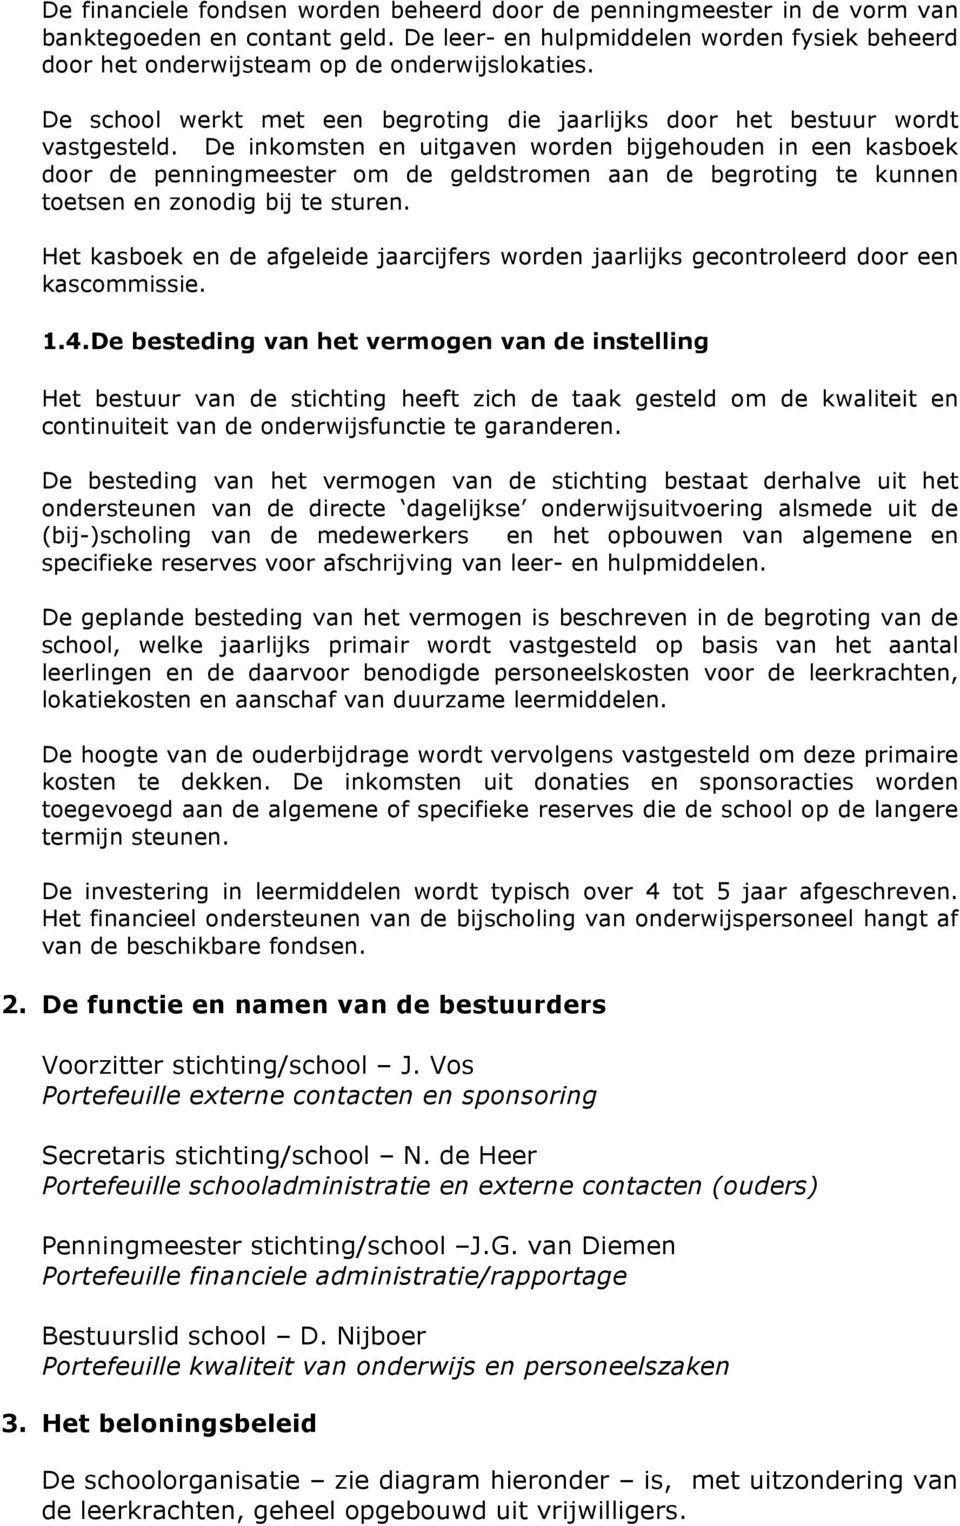 De inkomsten en uitgaven worden bijgehouden in een kasboek door de penningmeester om de geldstromen aan de begroting te kunnen toetsen en zonodig bij te sturen.